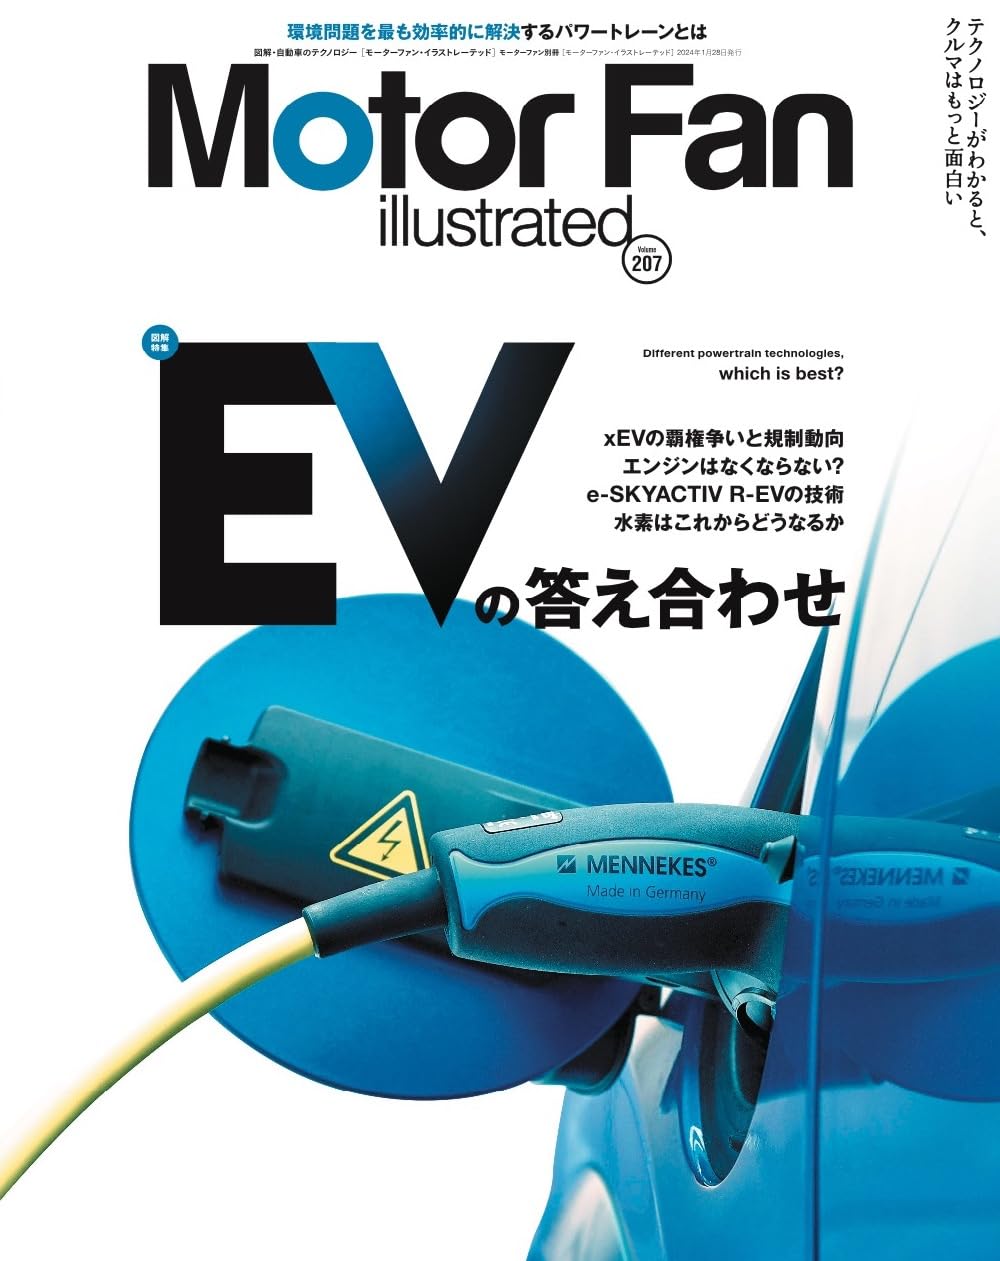 MOTOR FAN illustrated - モ-タ-ファンイラストレ-テッド - Vol.207 (モ-タ-ファン別冊)